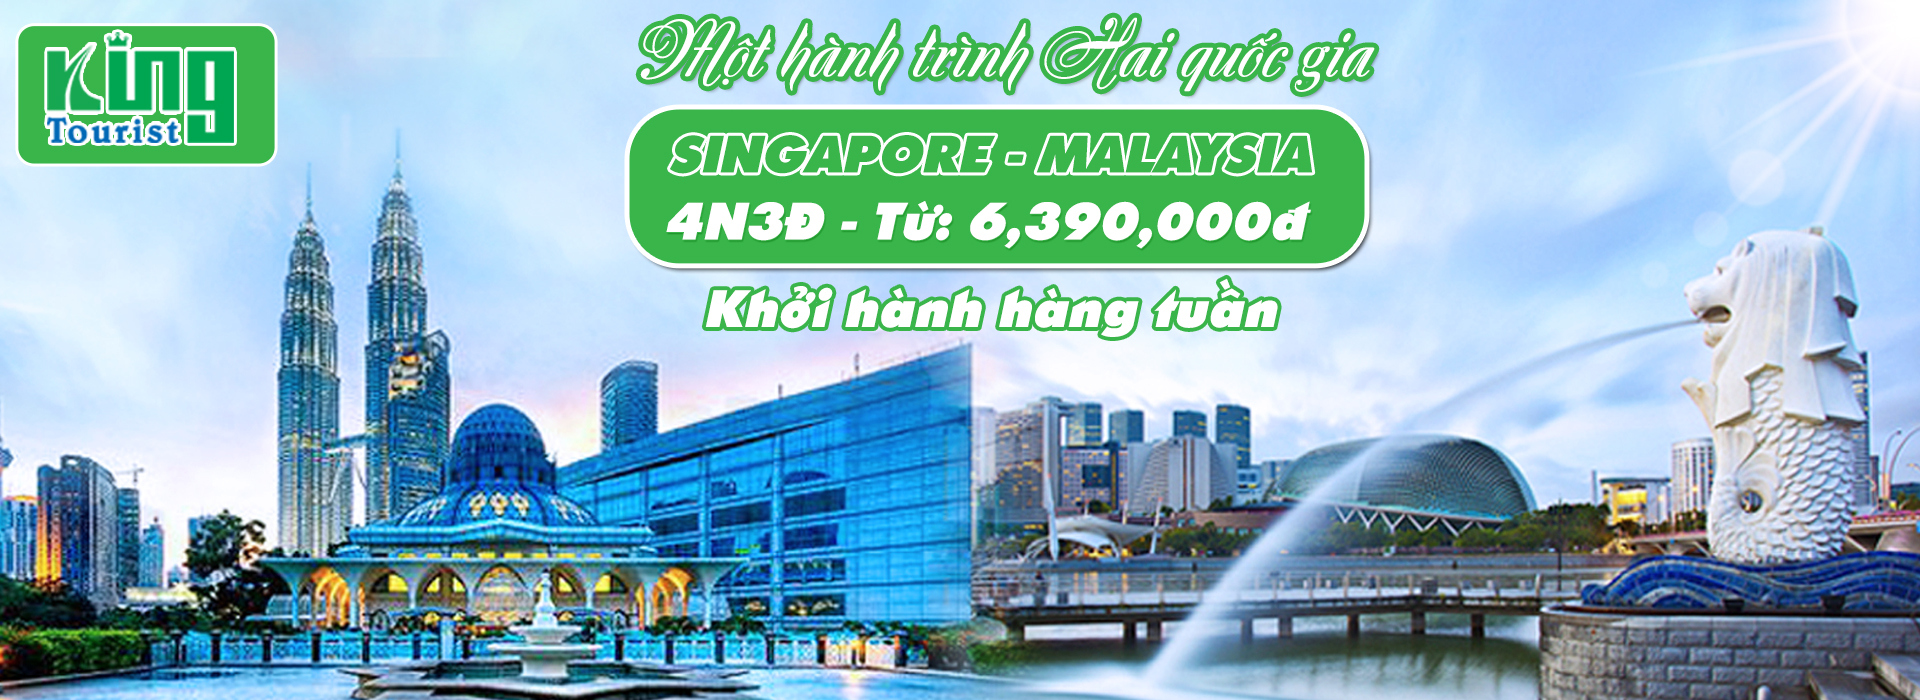 du lich singapore malaysia gia re 2023 kingtourist - du-lịch-singapore-malaysia-giá-rẻ-2023_kingtourist